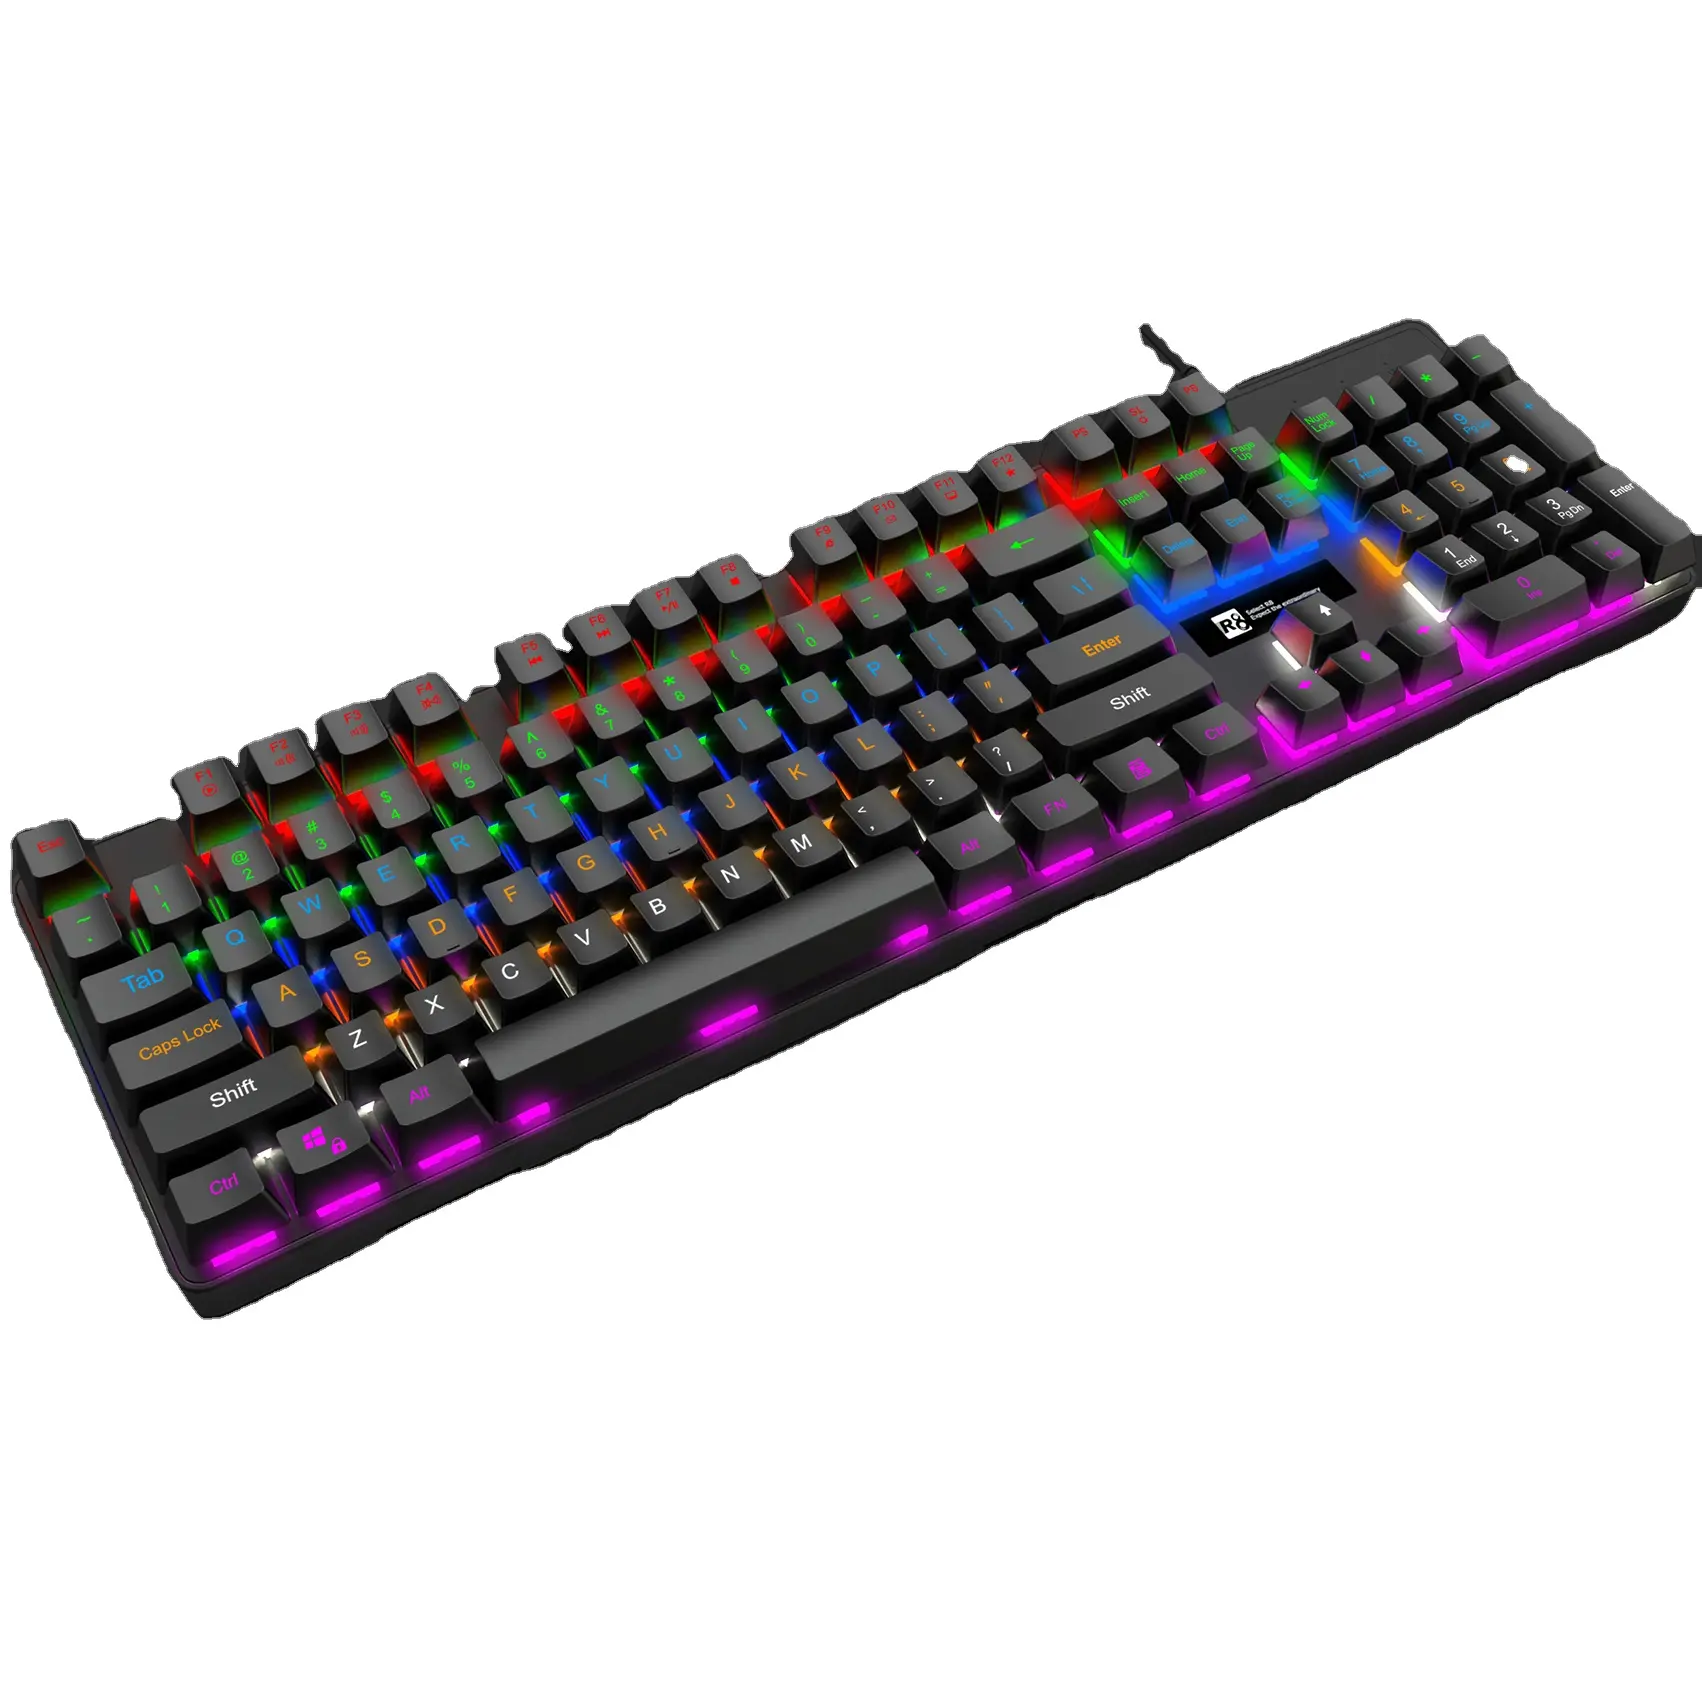 OEM ब्रांड नाम खिलाड़ी आरजीबी वायर्ड Ergonomics कंप्यूटर गेमिंग कीबोर्ड के साथ इंद्रधनुष रंग प्रकाश का नेतृत्व किया